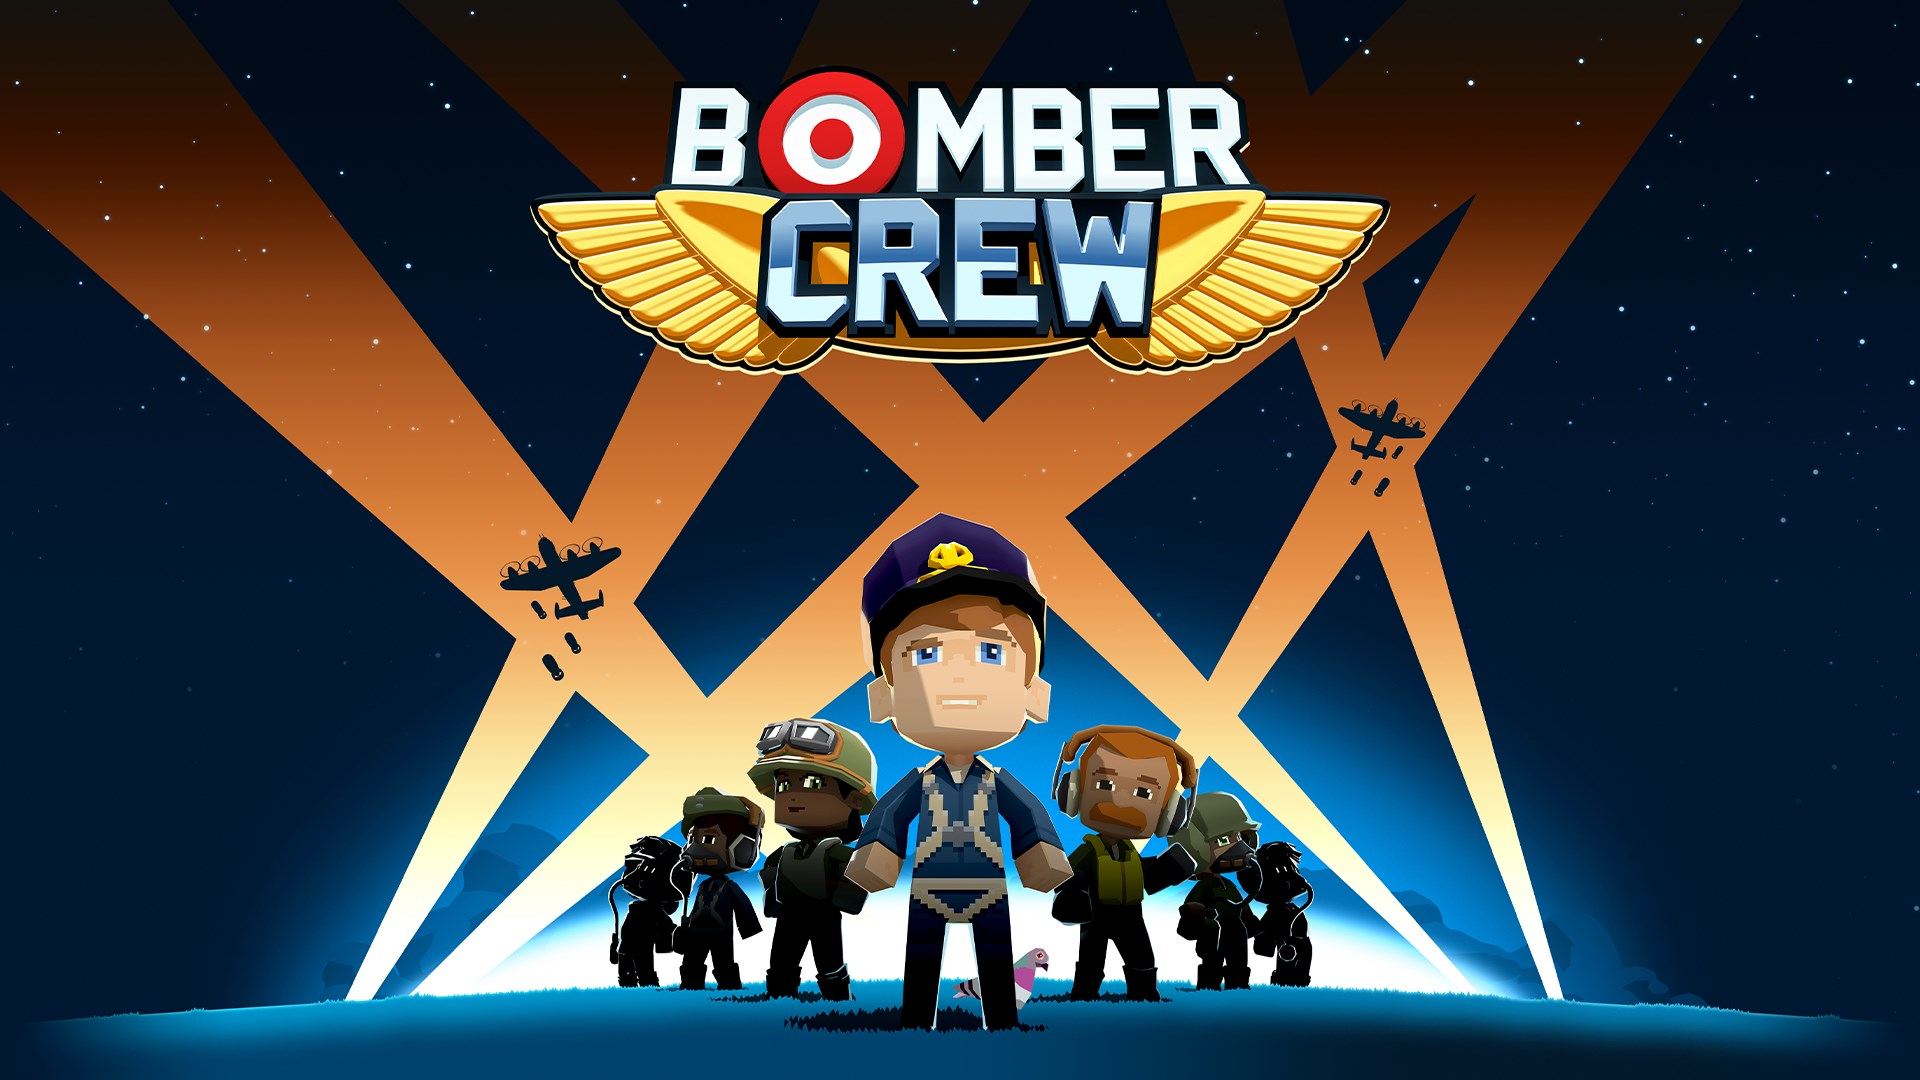 Du kan lägga till Bomber Crew-spelet i ditt arkiv gratis och permanent via Steam.